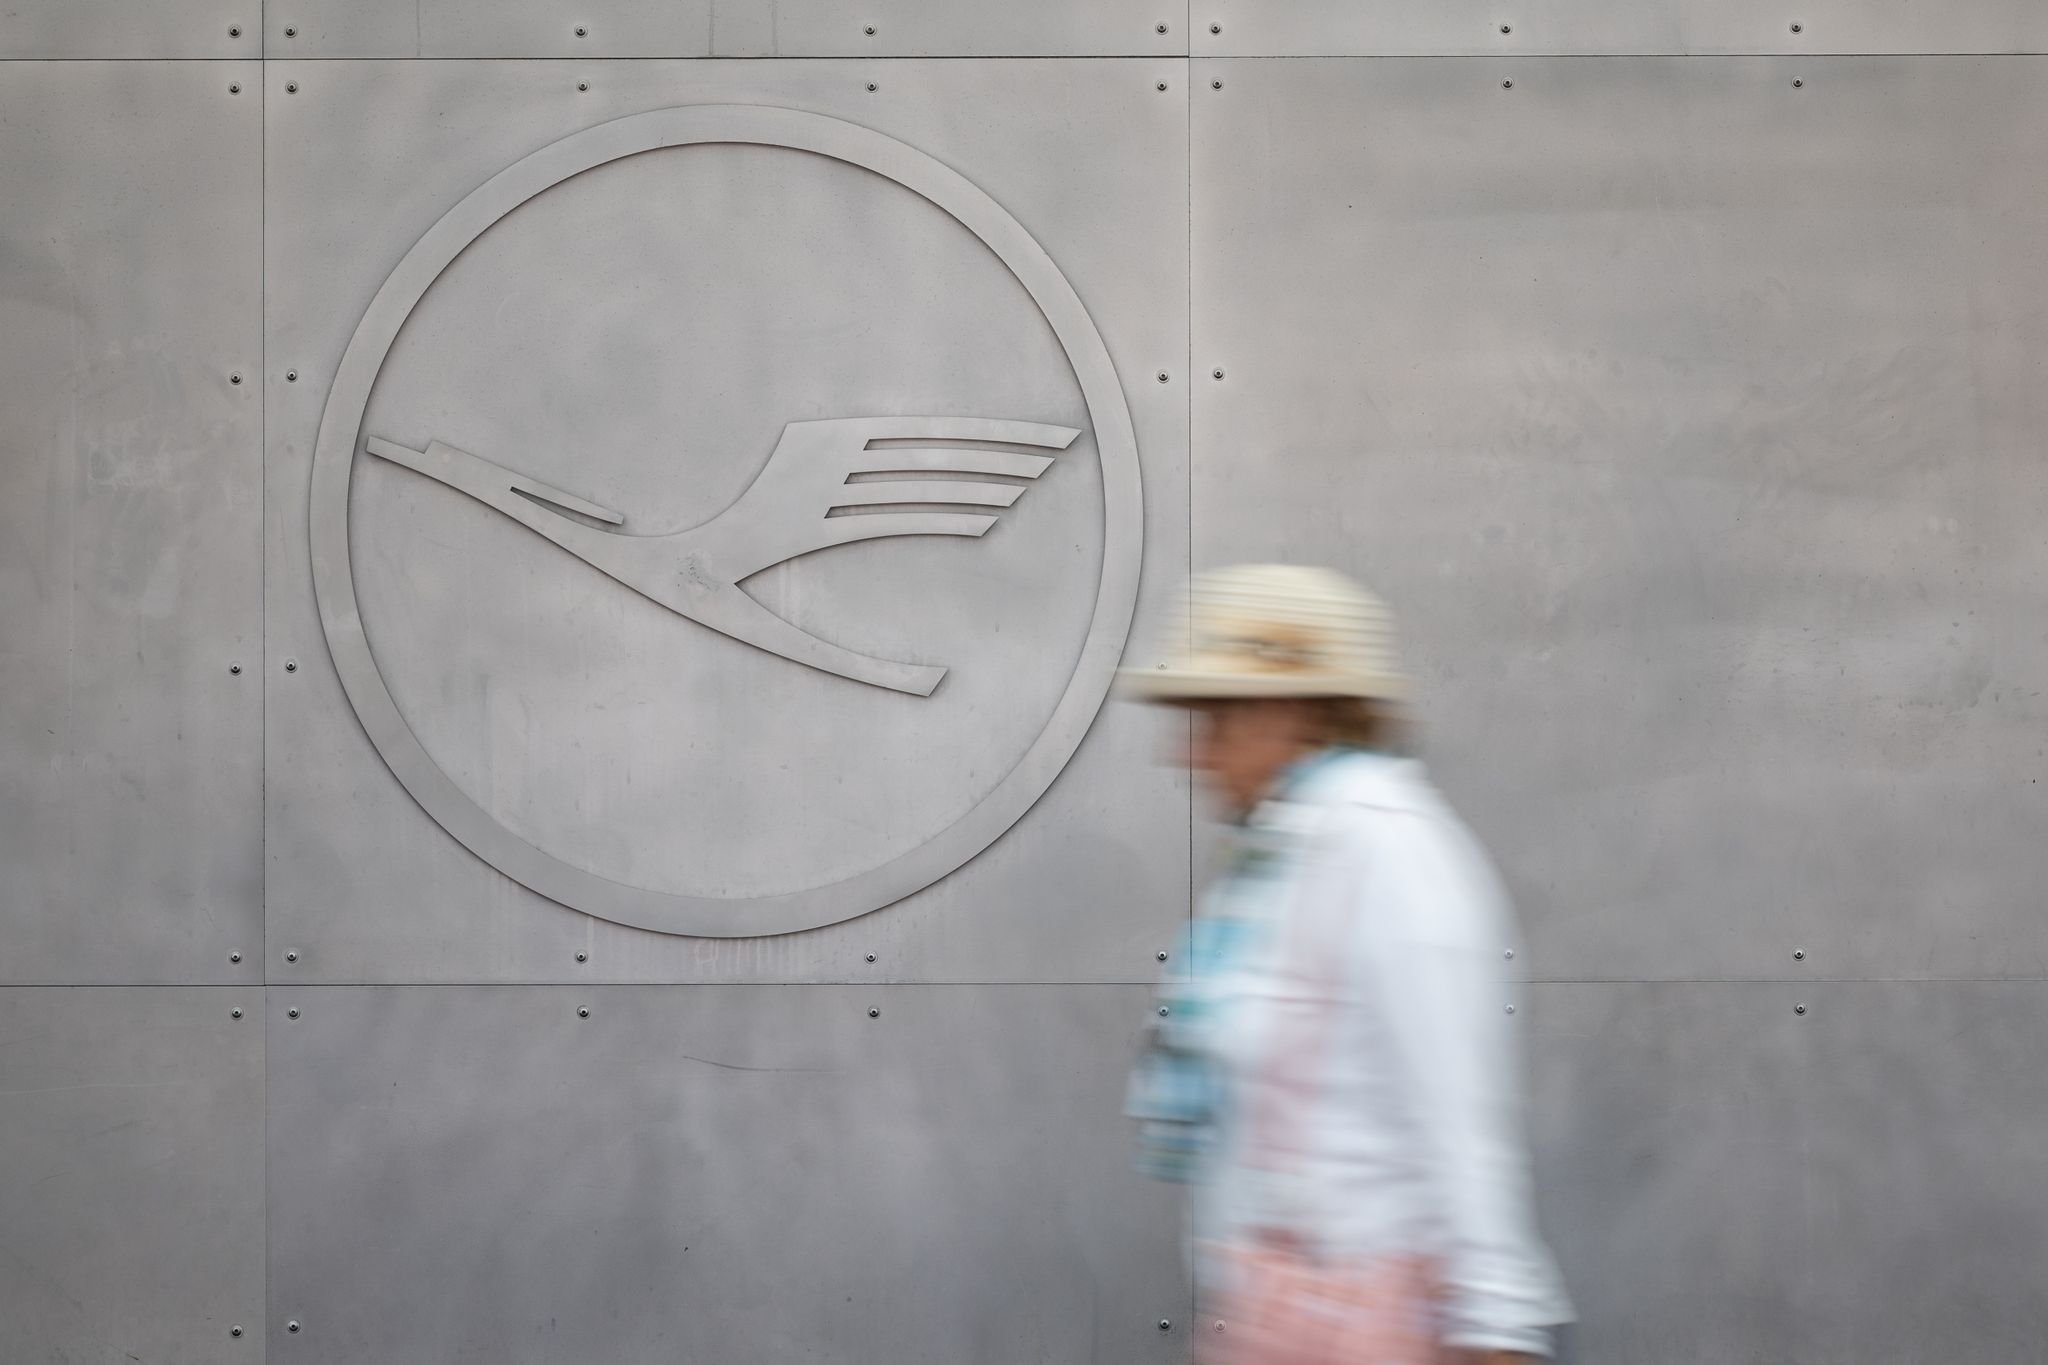 Luftverkehr: Bund steigt bei Lufthansa aus - Aktienkurs sinkt